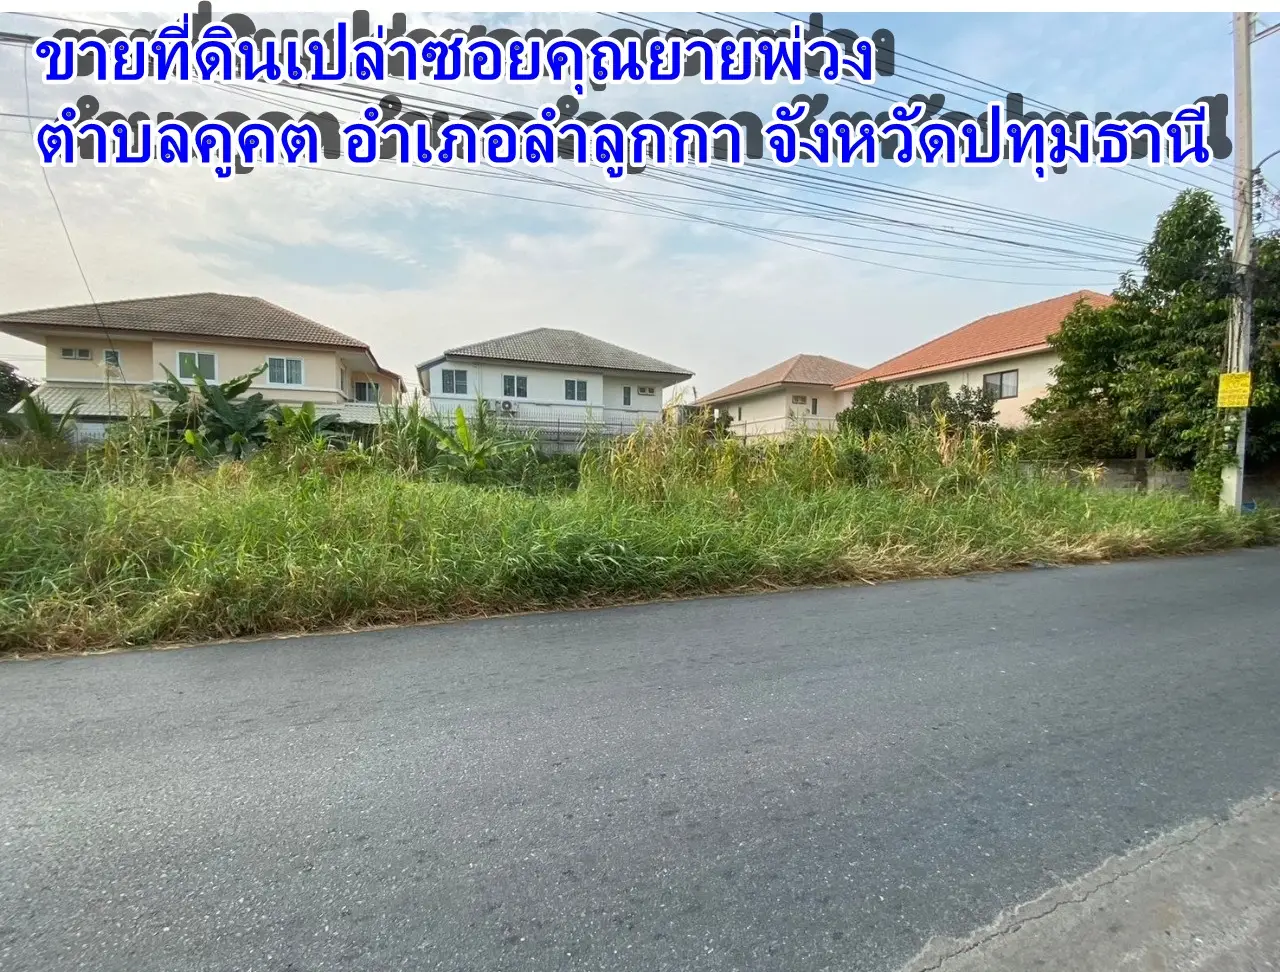 巴吞他尼府 Lam Luk Ka 县 Khu Khot 街道 Soi Khun Yai Phuang 出售土地。